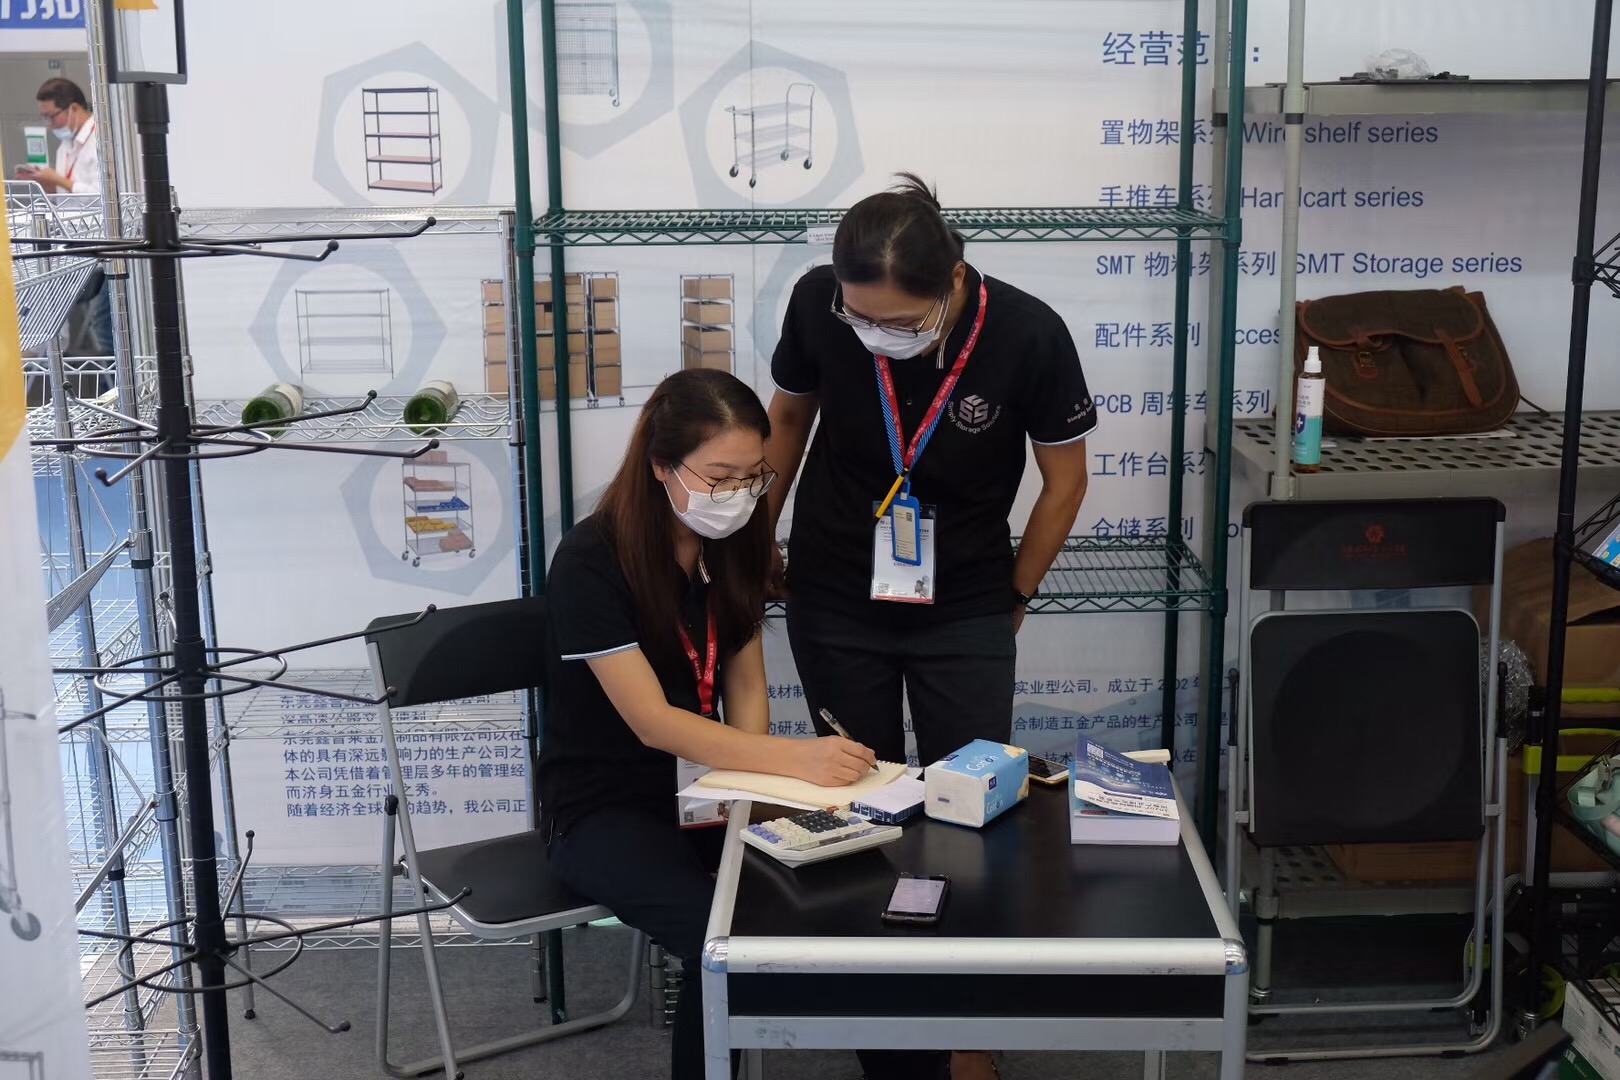 Última exposición a la que asistimos: Exposición de equipos y pantallas de venta minorista inteligente de Asia 2020